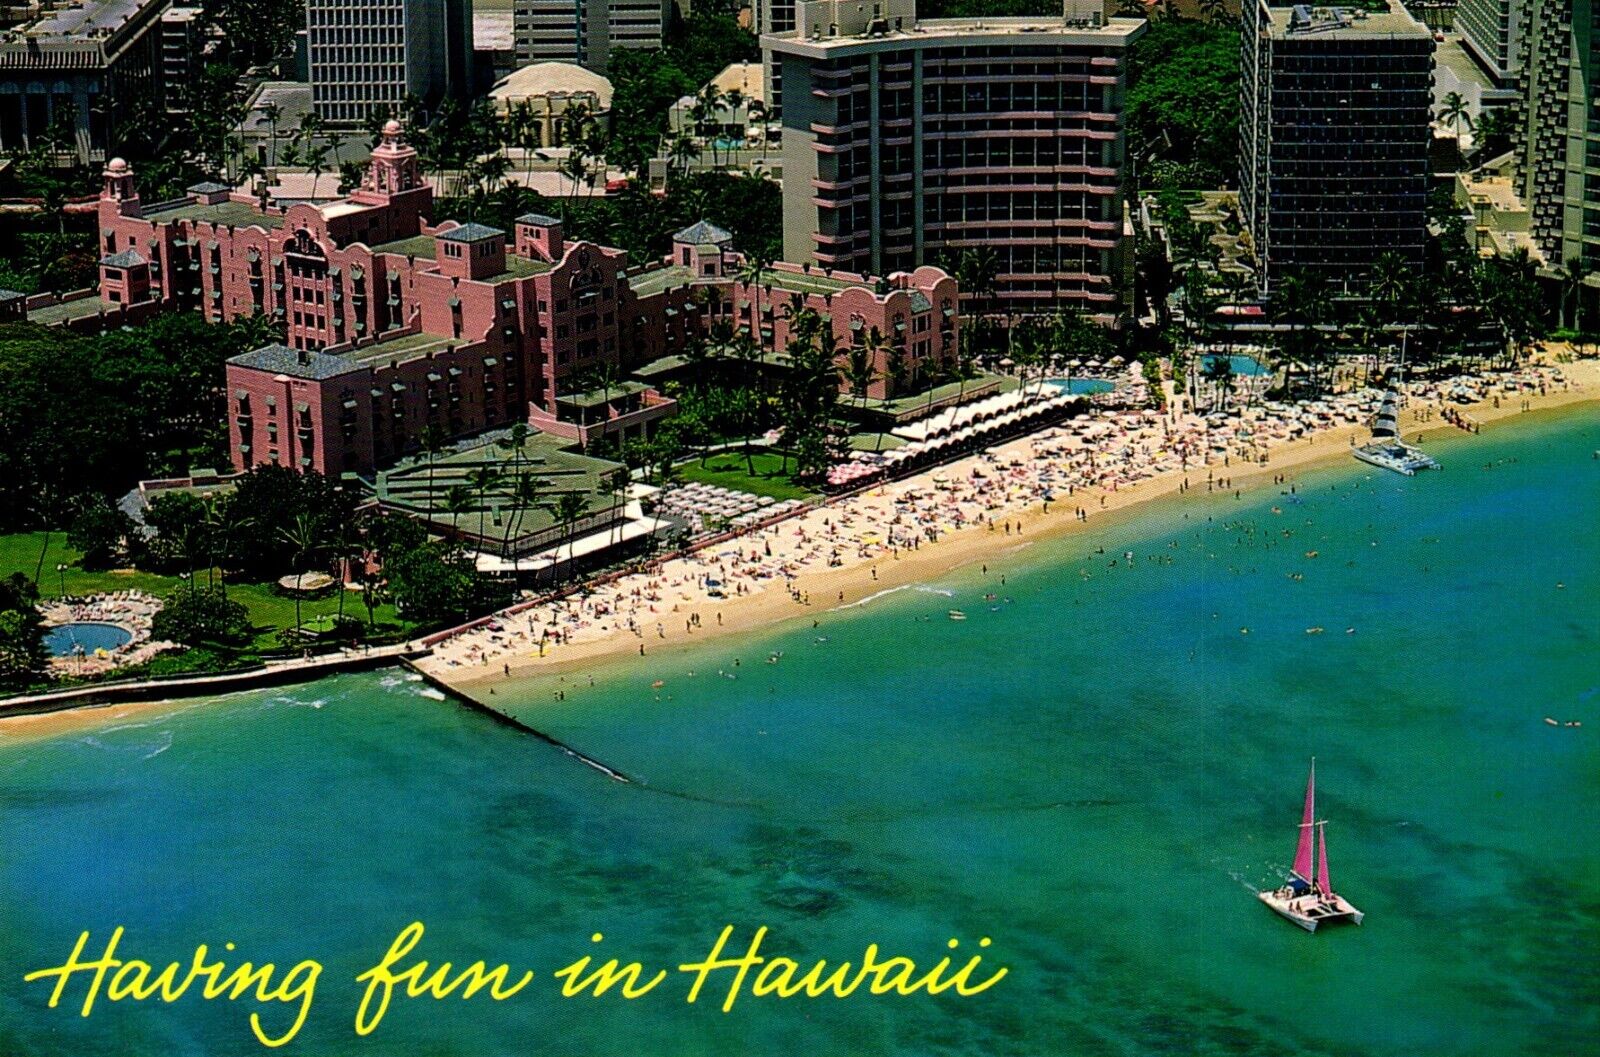 Having Fun In Hawaii - Royal Hawaiian Hotel Postcard